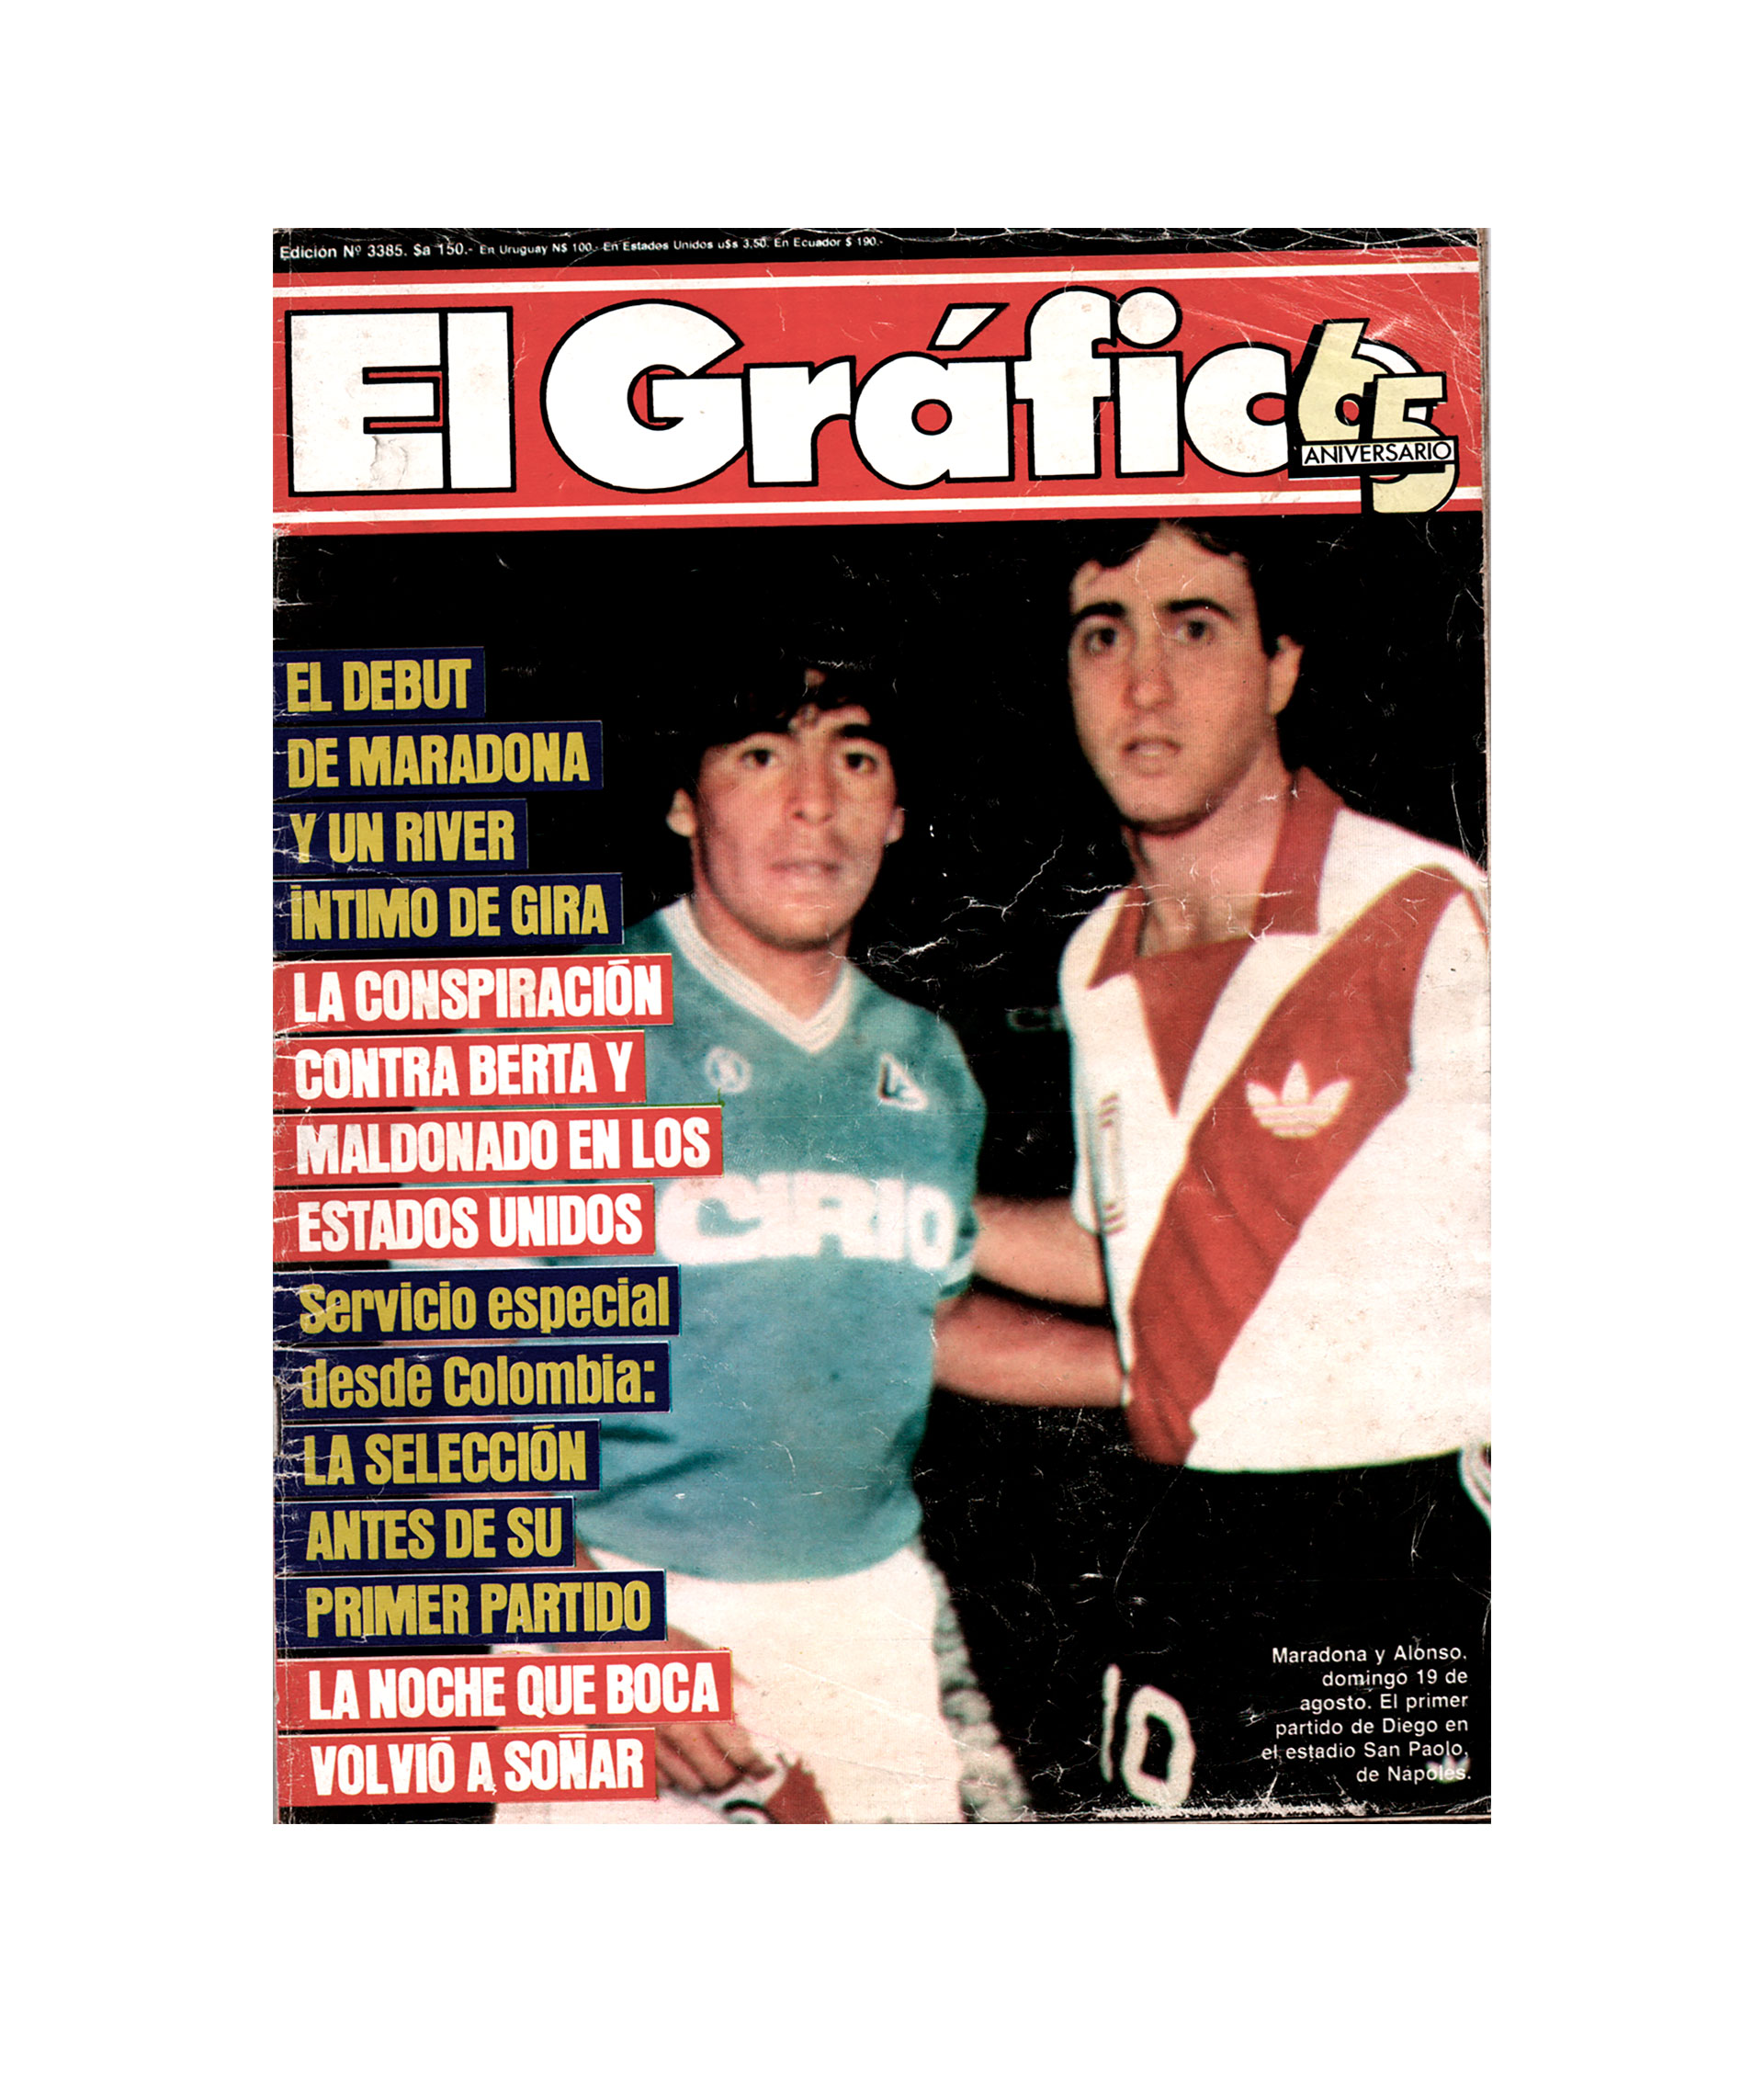 Tapa de la revista El Gráfico con Diego Maradona y Norberto Alonso, imagen sacada del partido amistoso de 1984